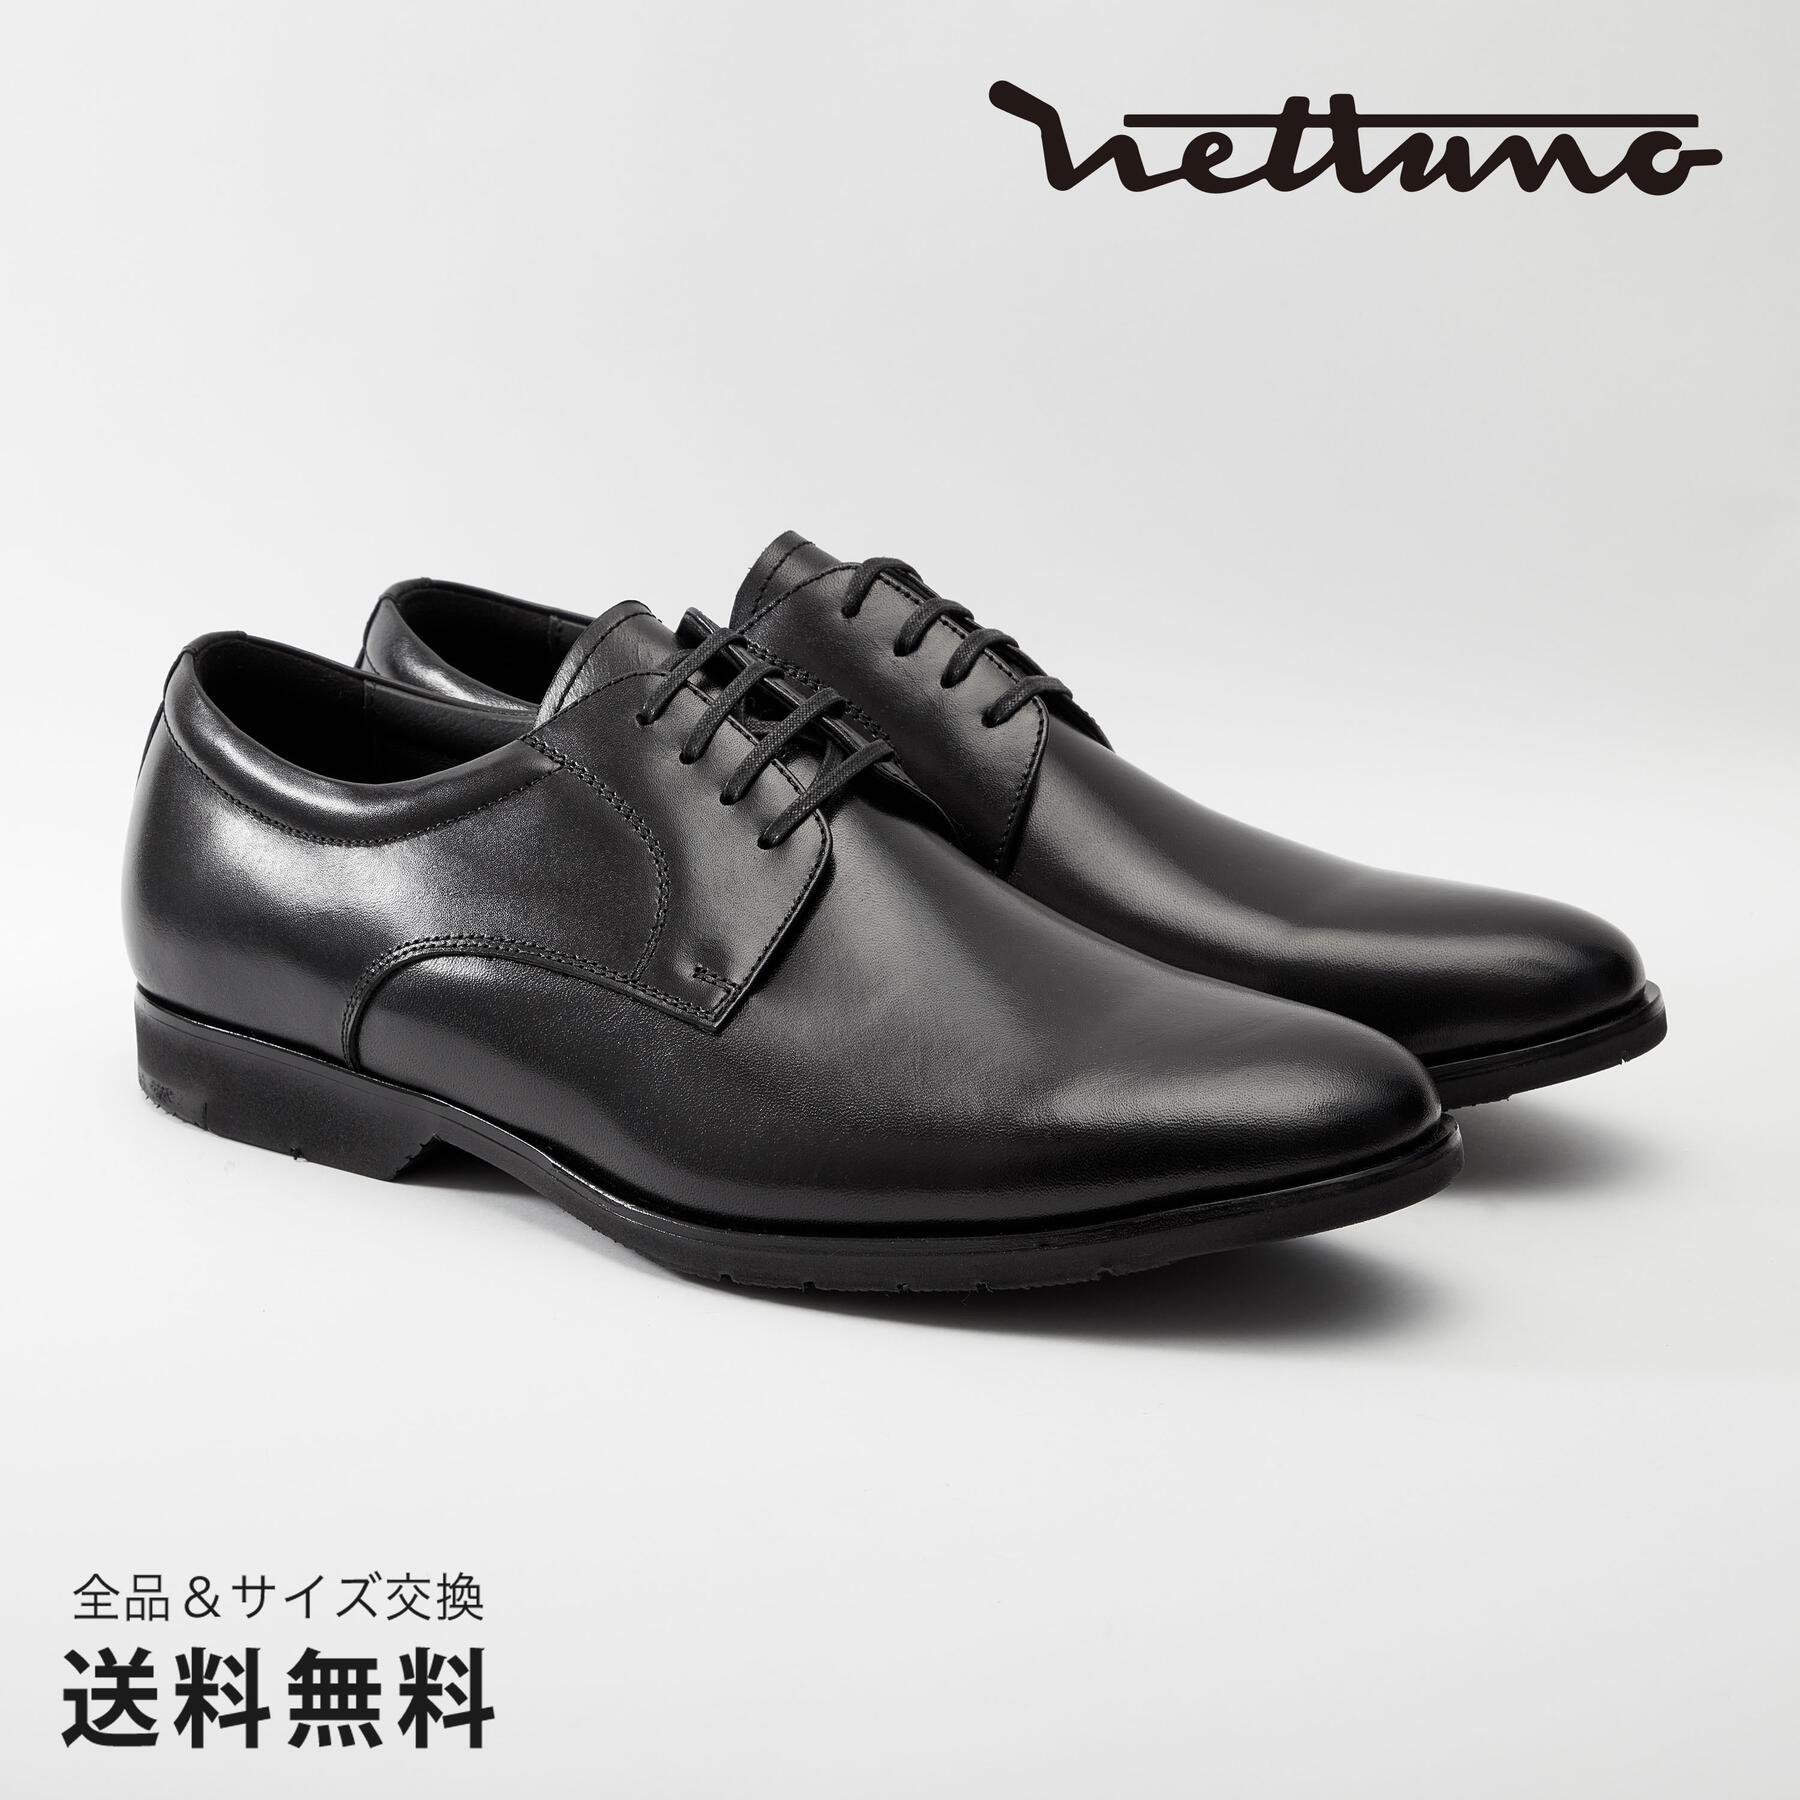 NETTUNO ネッツーノ 外羽根プレーントウ 4E 革靴 防水キップレザー ラバーソール ブラック セメンテッド 黒 BLACK 64616 日本 靴 メンズ靴 ビジネスシューズ サイズ 23.5 - 27.5cm 